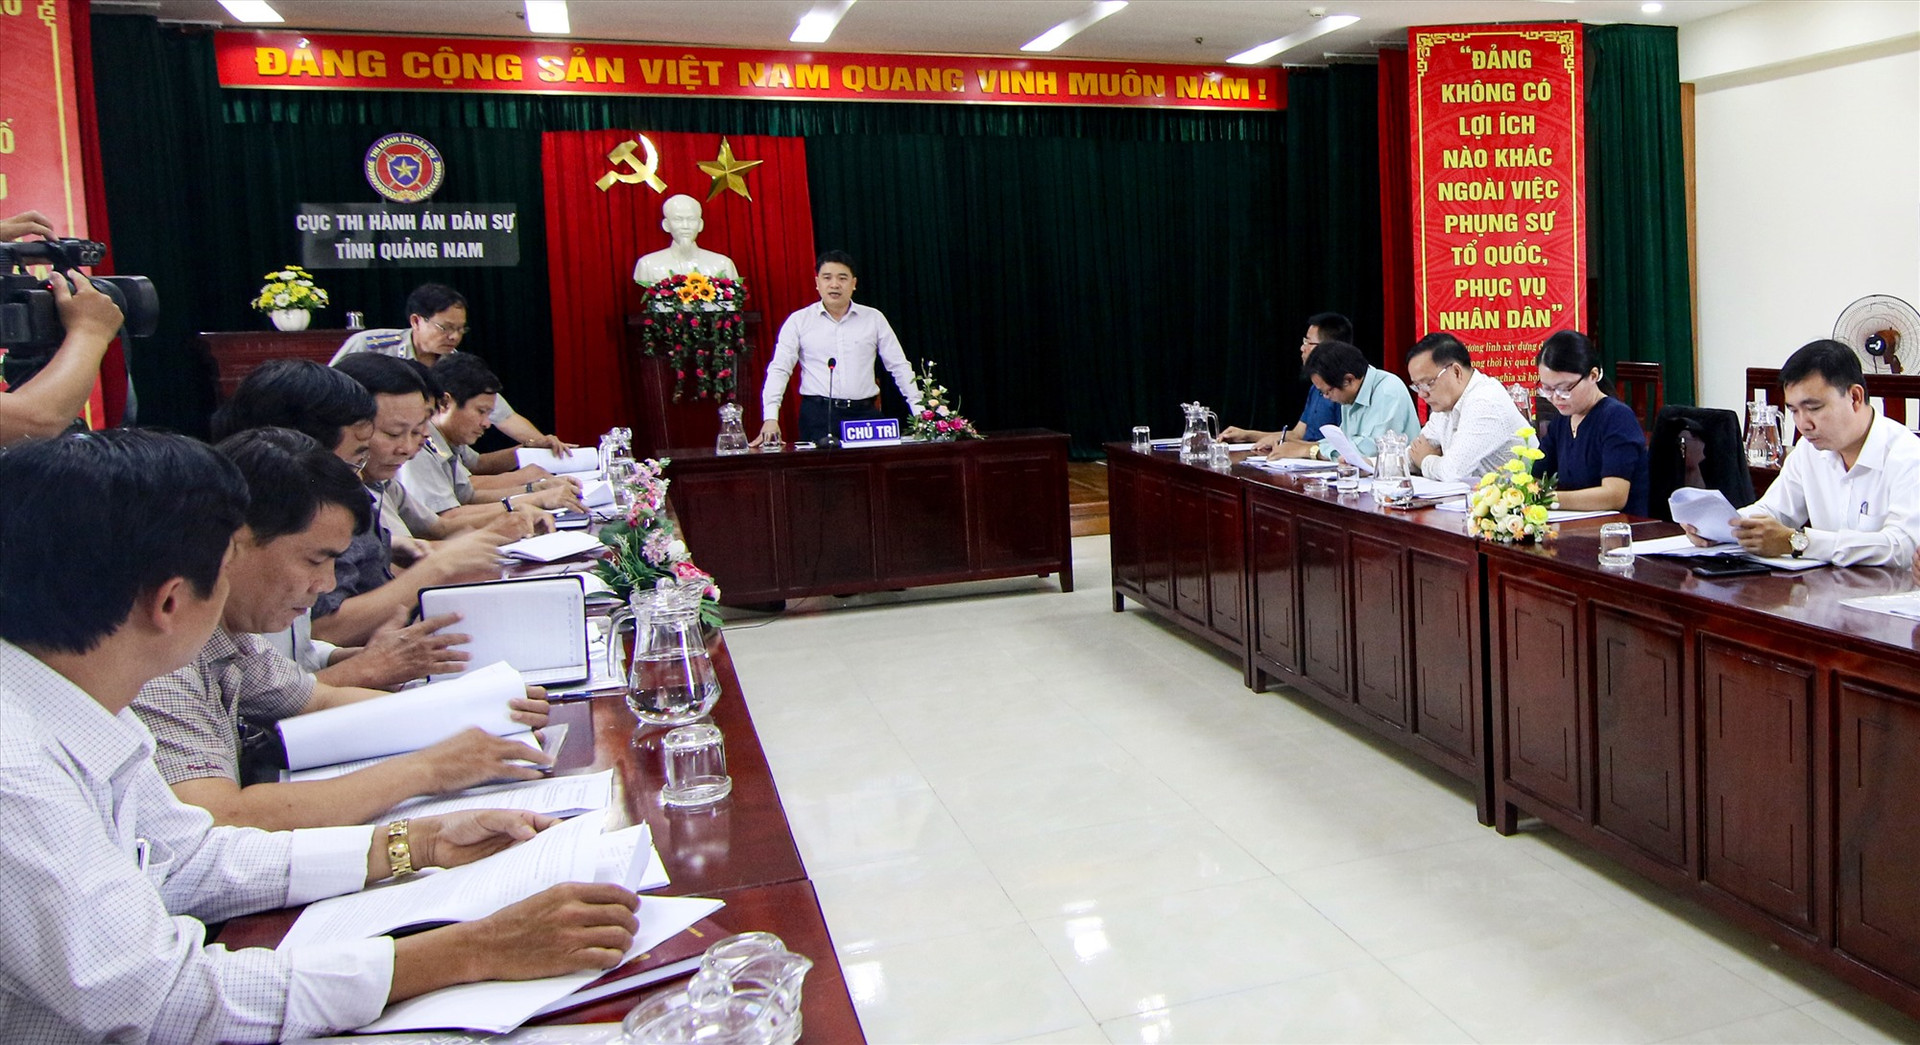 Phó Chủ tịch UBND tỉnh Trần Văn Tân đề nghị các đơn vị, địa phương tích cực phối hợp để thực hiện đảm bảo khách quan, đúng quy định trong thi hành án dân sự. Ảnh: T.C